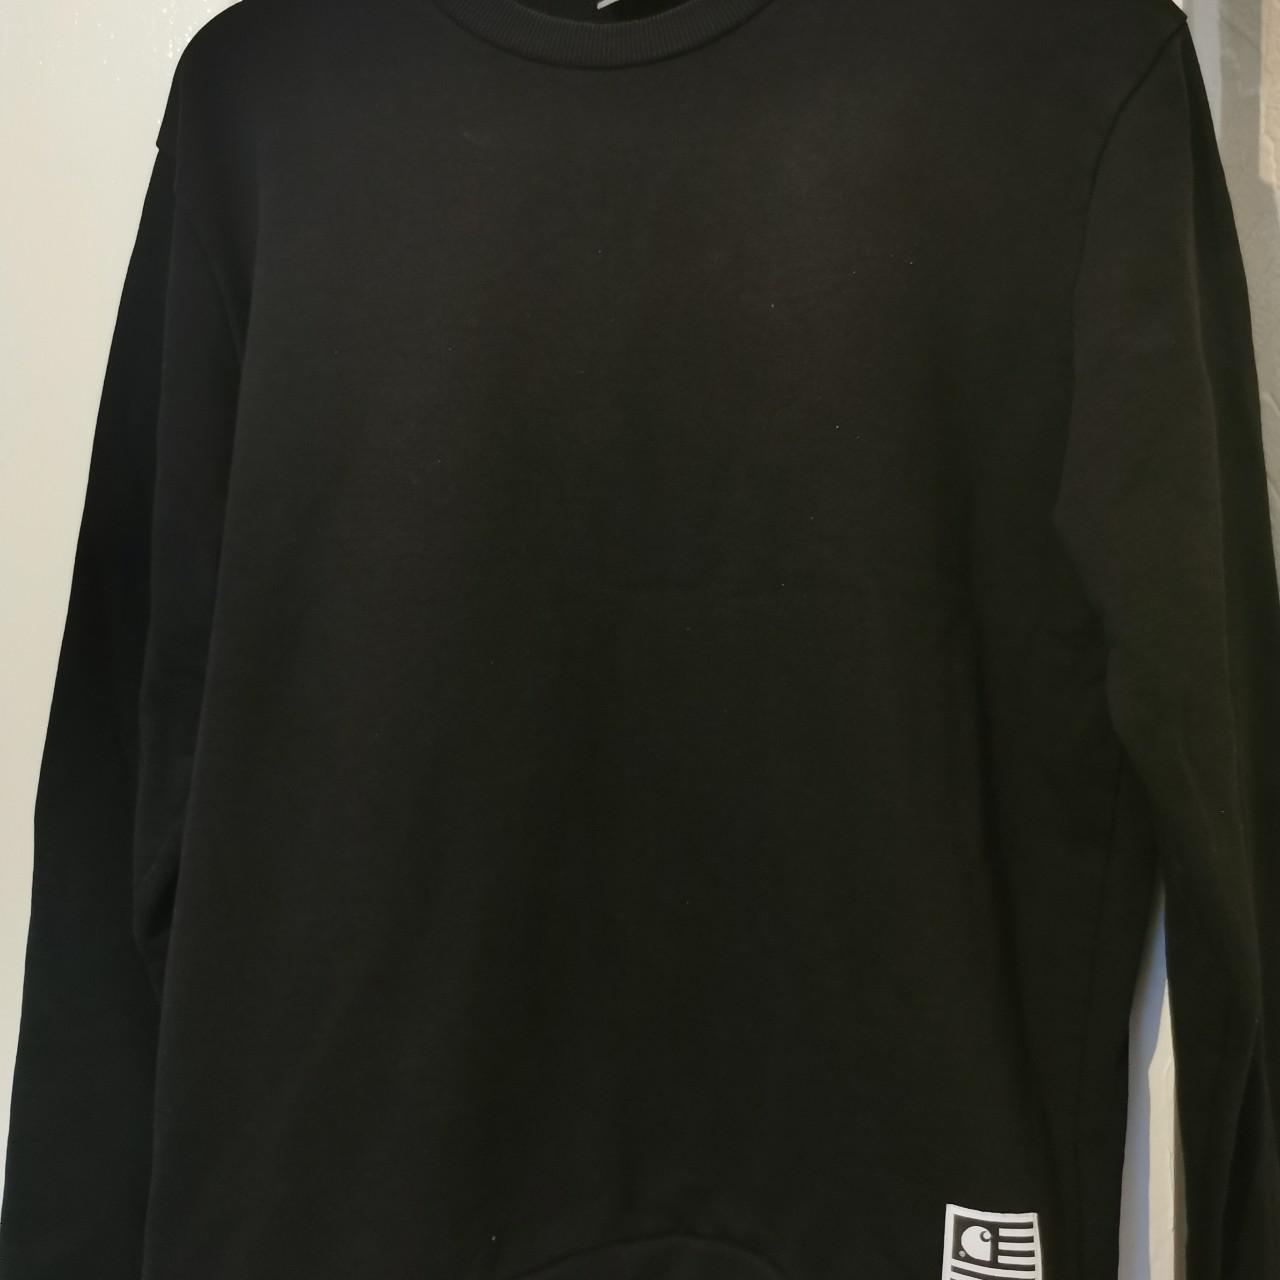 Carhartt jumper in black. Medium size. Logo print on... - Depop